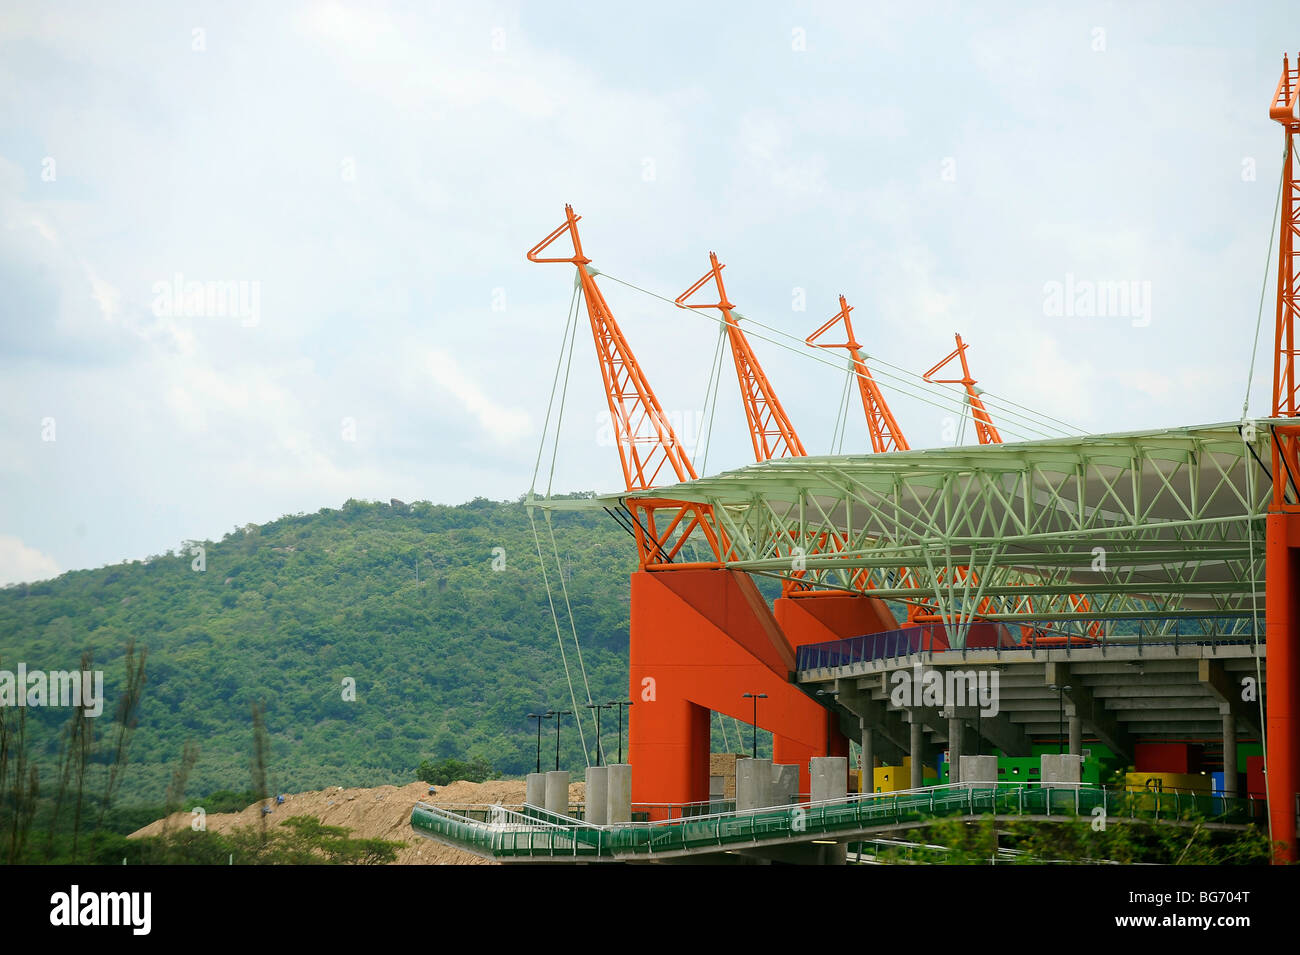 Giraffe Strukturen im Mbombela-Stadion in Nelspruit, Südafrika. Eines der Austragungsort für die FIFA WM 2010 Stockfoto